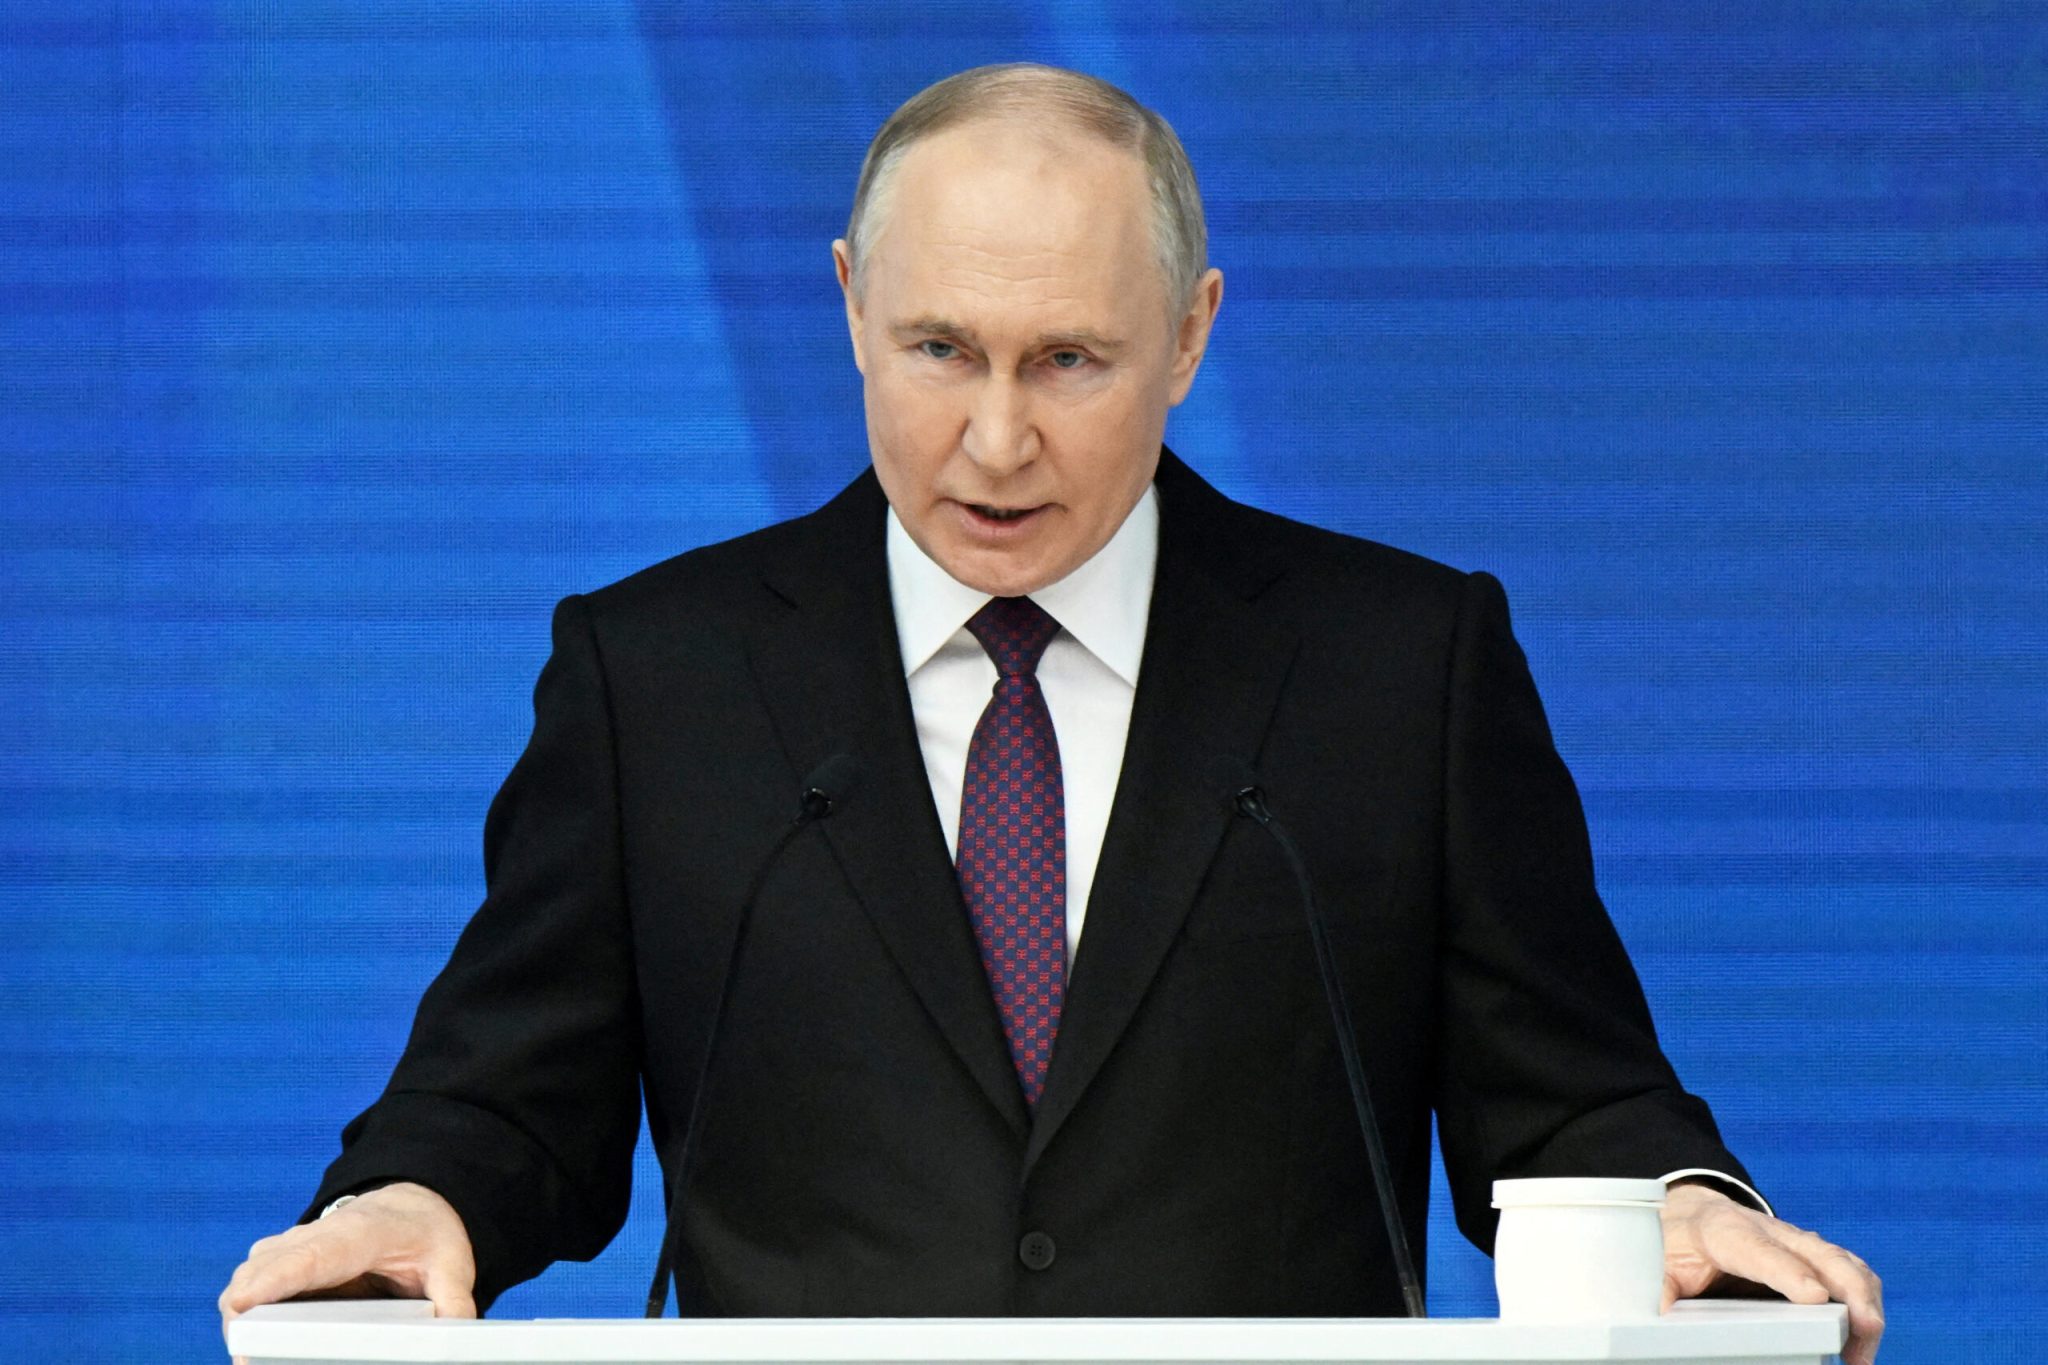 Πανστρατιά κήρυξε ο Β.Πούτιν στην Ρωσία για ολοκληρωτικό πόλεμο: «Όλοι οι Ρώσοι πρέπει να σκέπτονται ότι είναι στην πρώτη γραμμή»